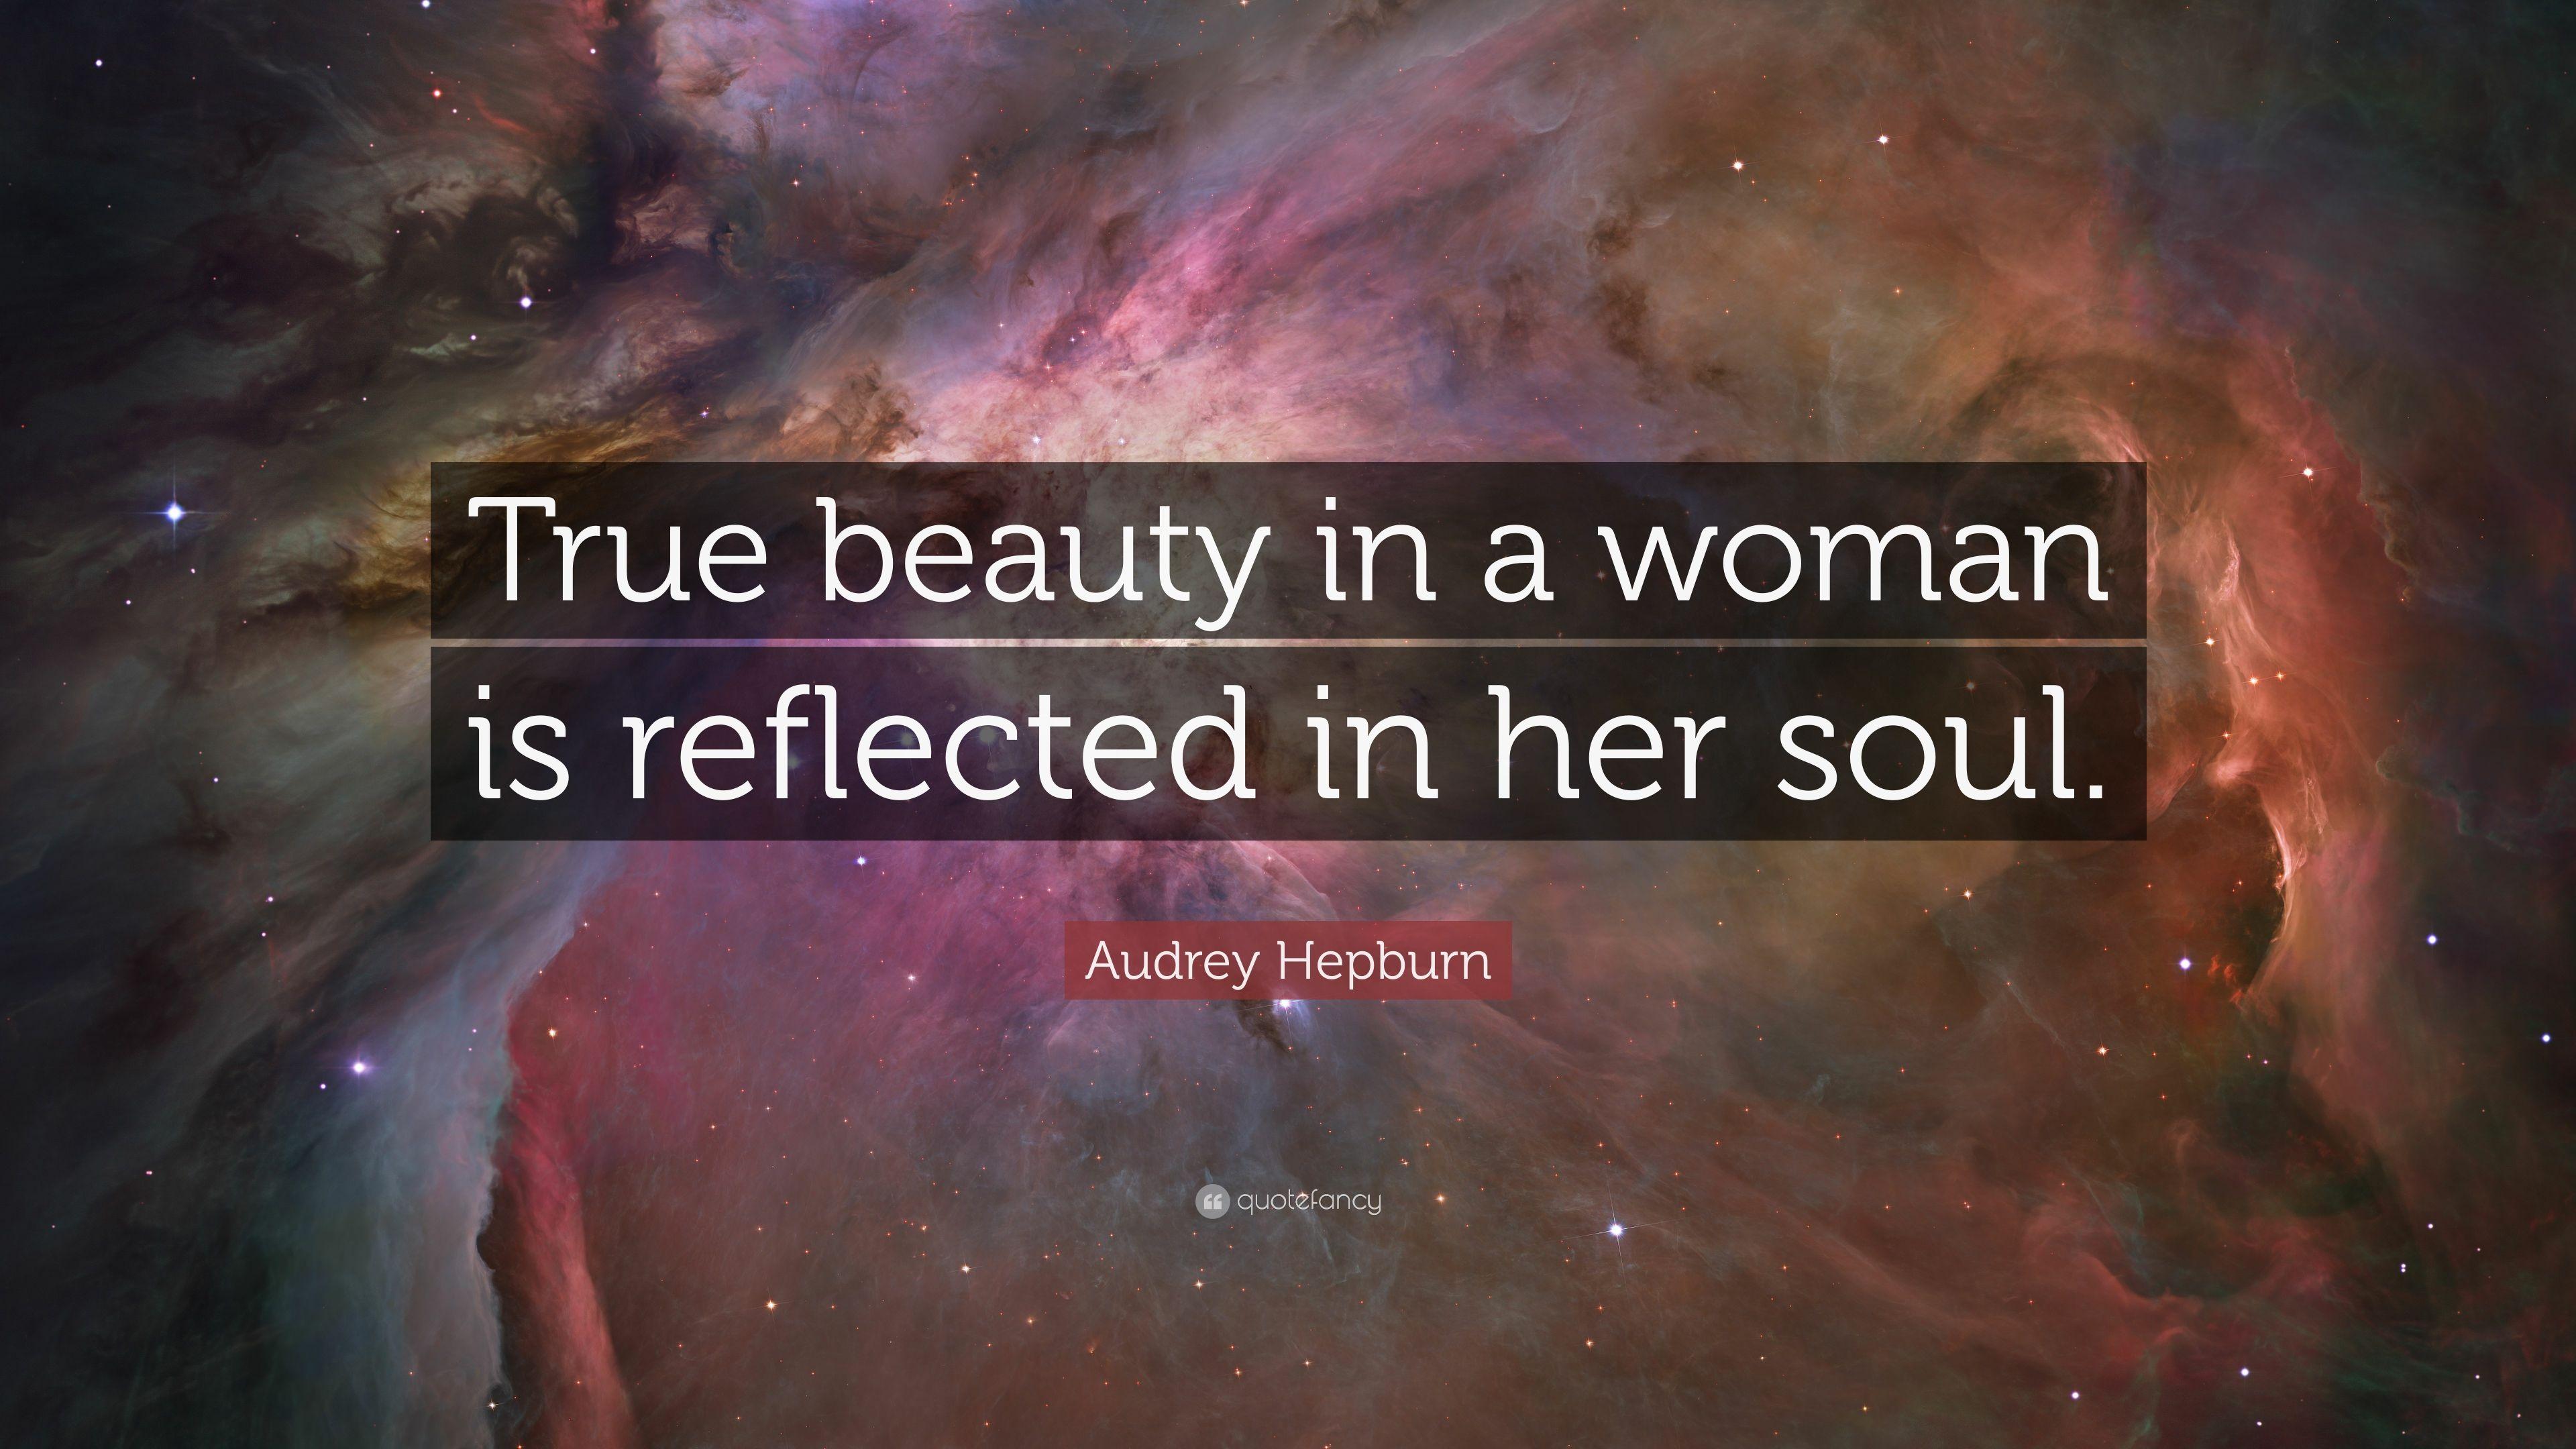 Audrey Hepburn Quotes Wallpapers - Top Free Audrey Hepburn Quotes ...